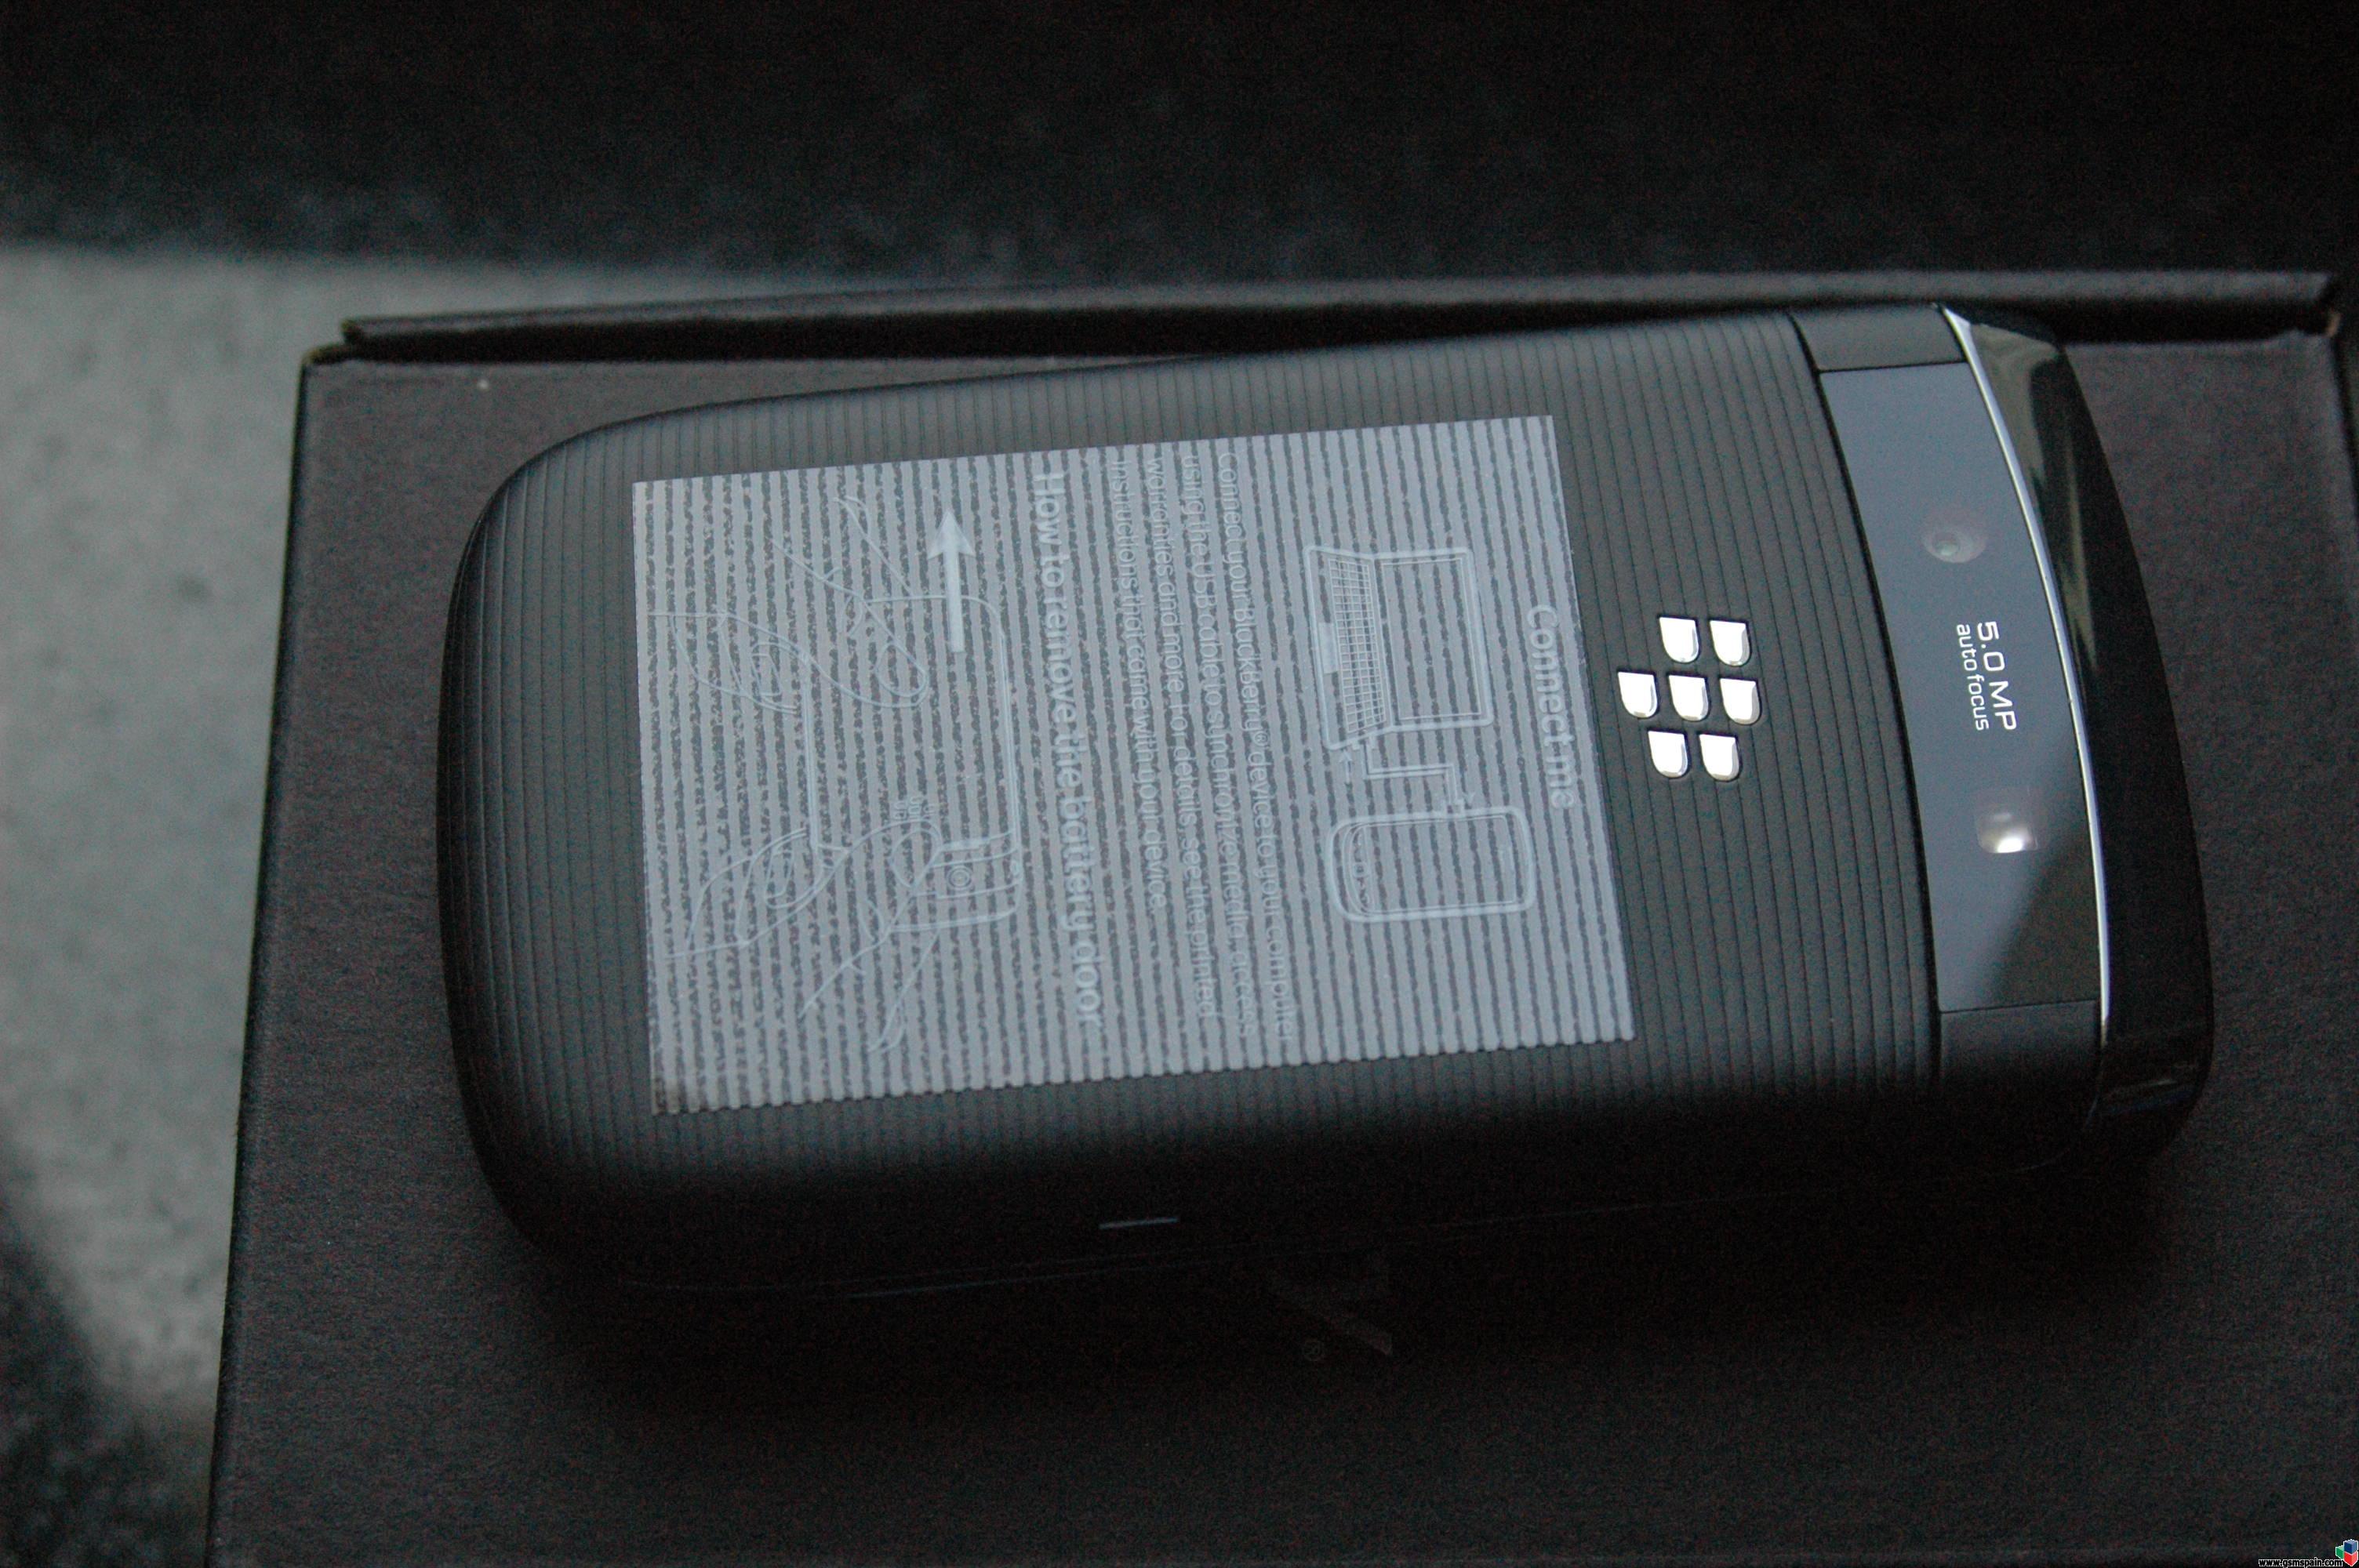 Blackberry 9800 Torch galera de imagenes